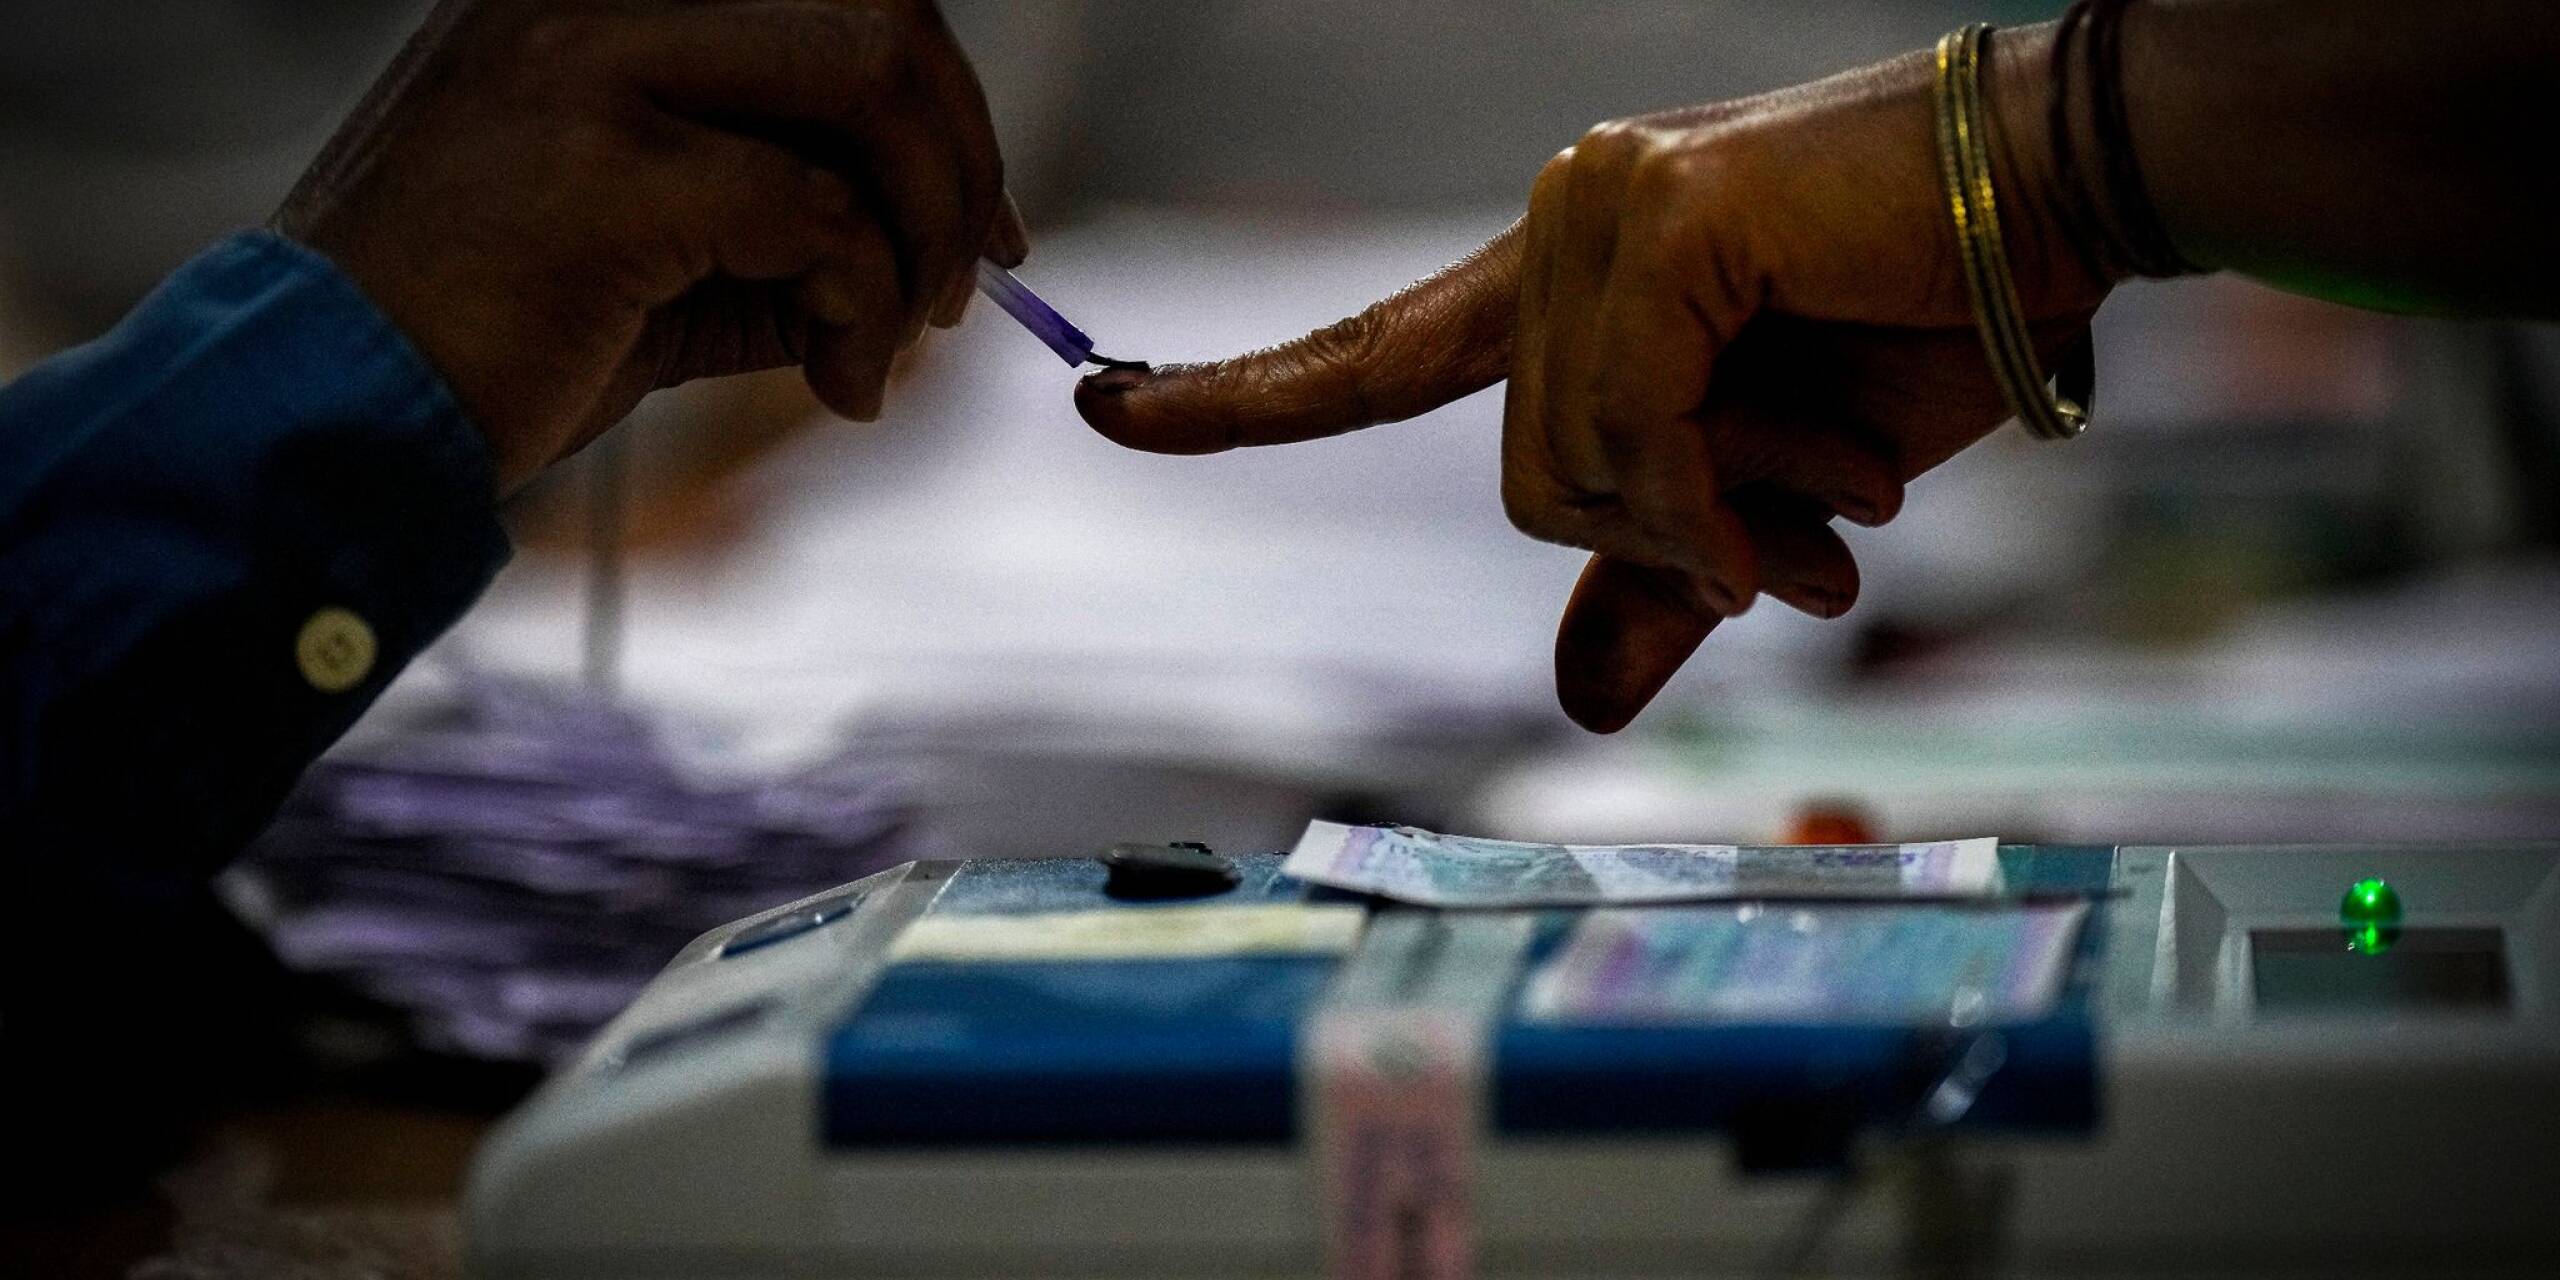 Ein Wahlhelfer markiert den Zeigefinger einer Frau mit unauslöschlicher Tinte, als sie während der indischen Parlamentswahlen im Dorf Bahona im nordöstlichen Assam zur Stimmabgabe erscheint.